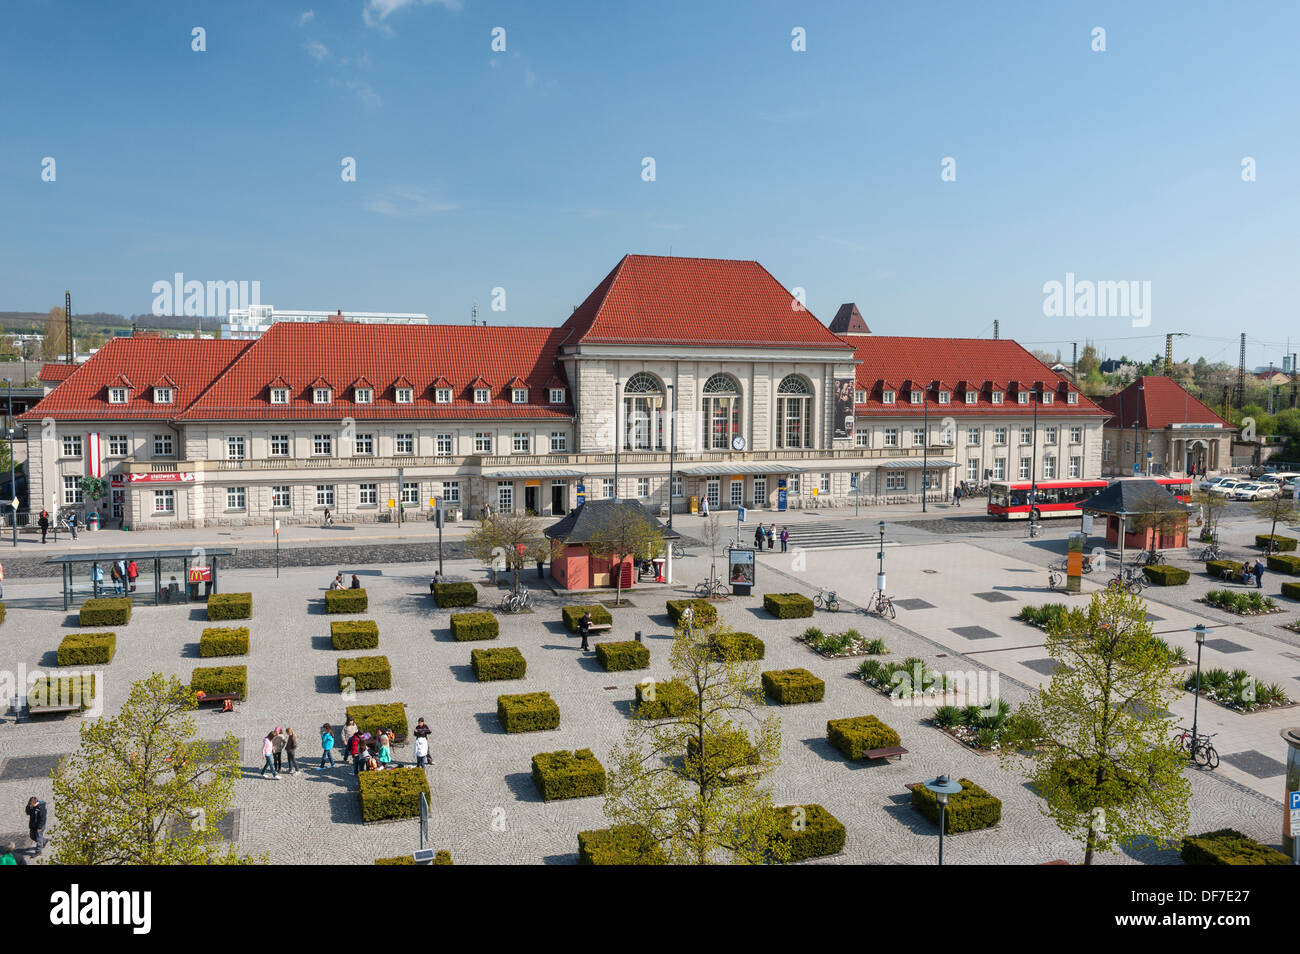 Edificio della stazione con il piazzale antistante, Weimar, Turingia, Germania Foto Stock